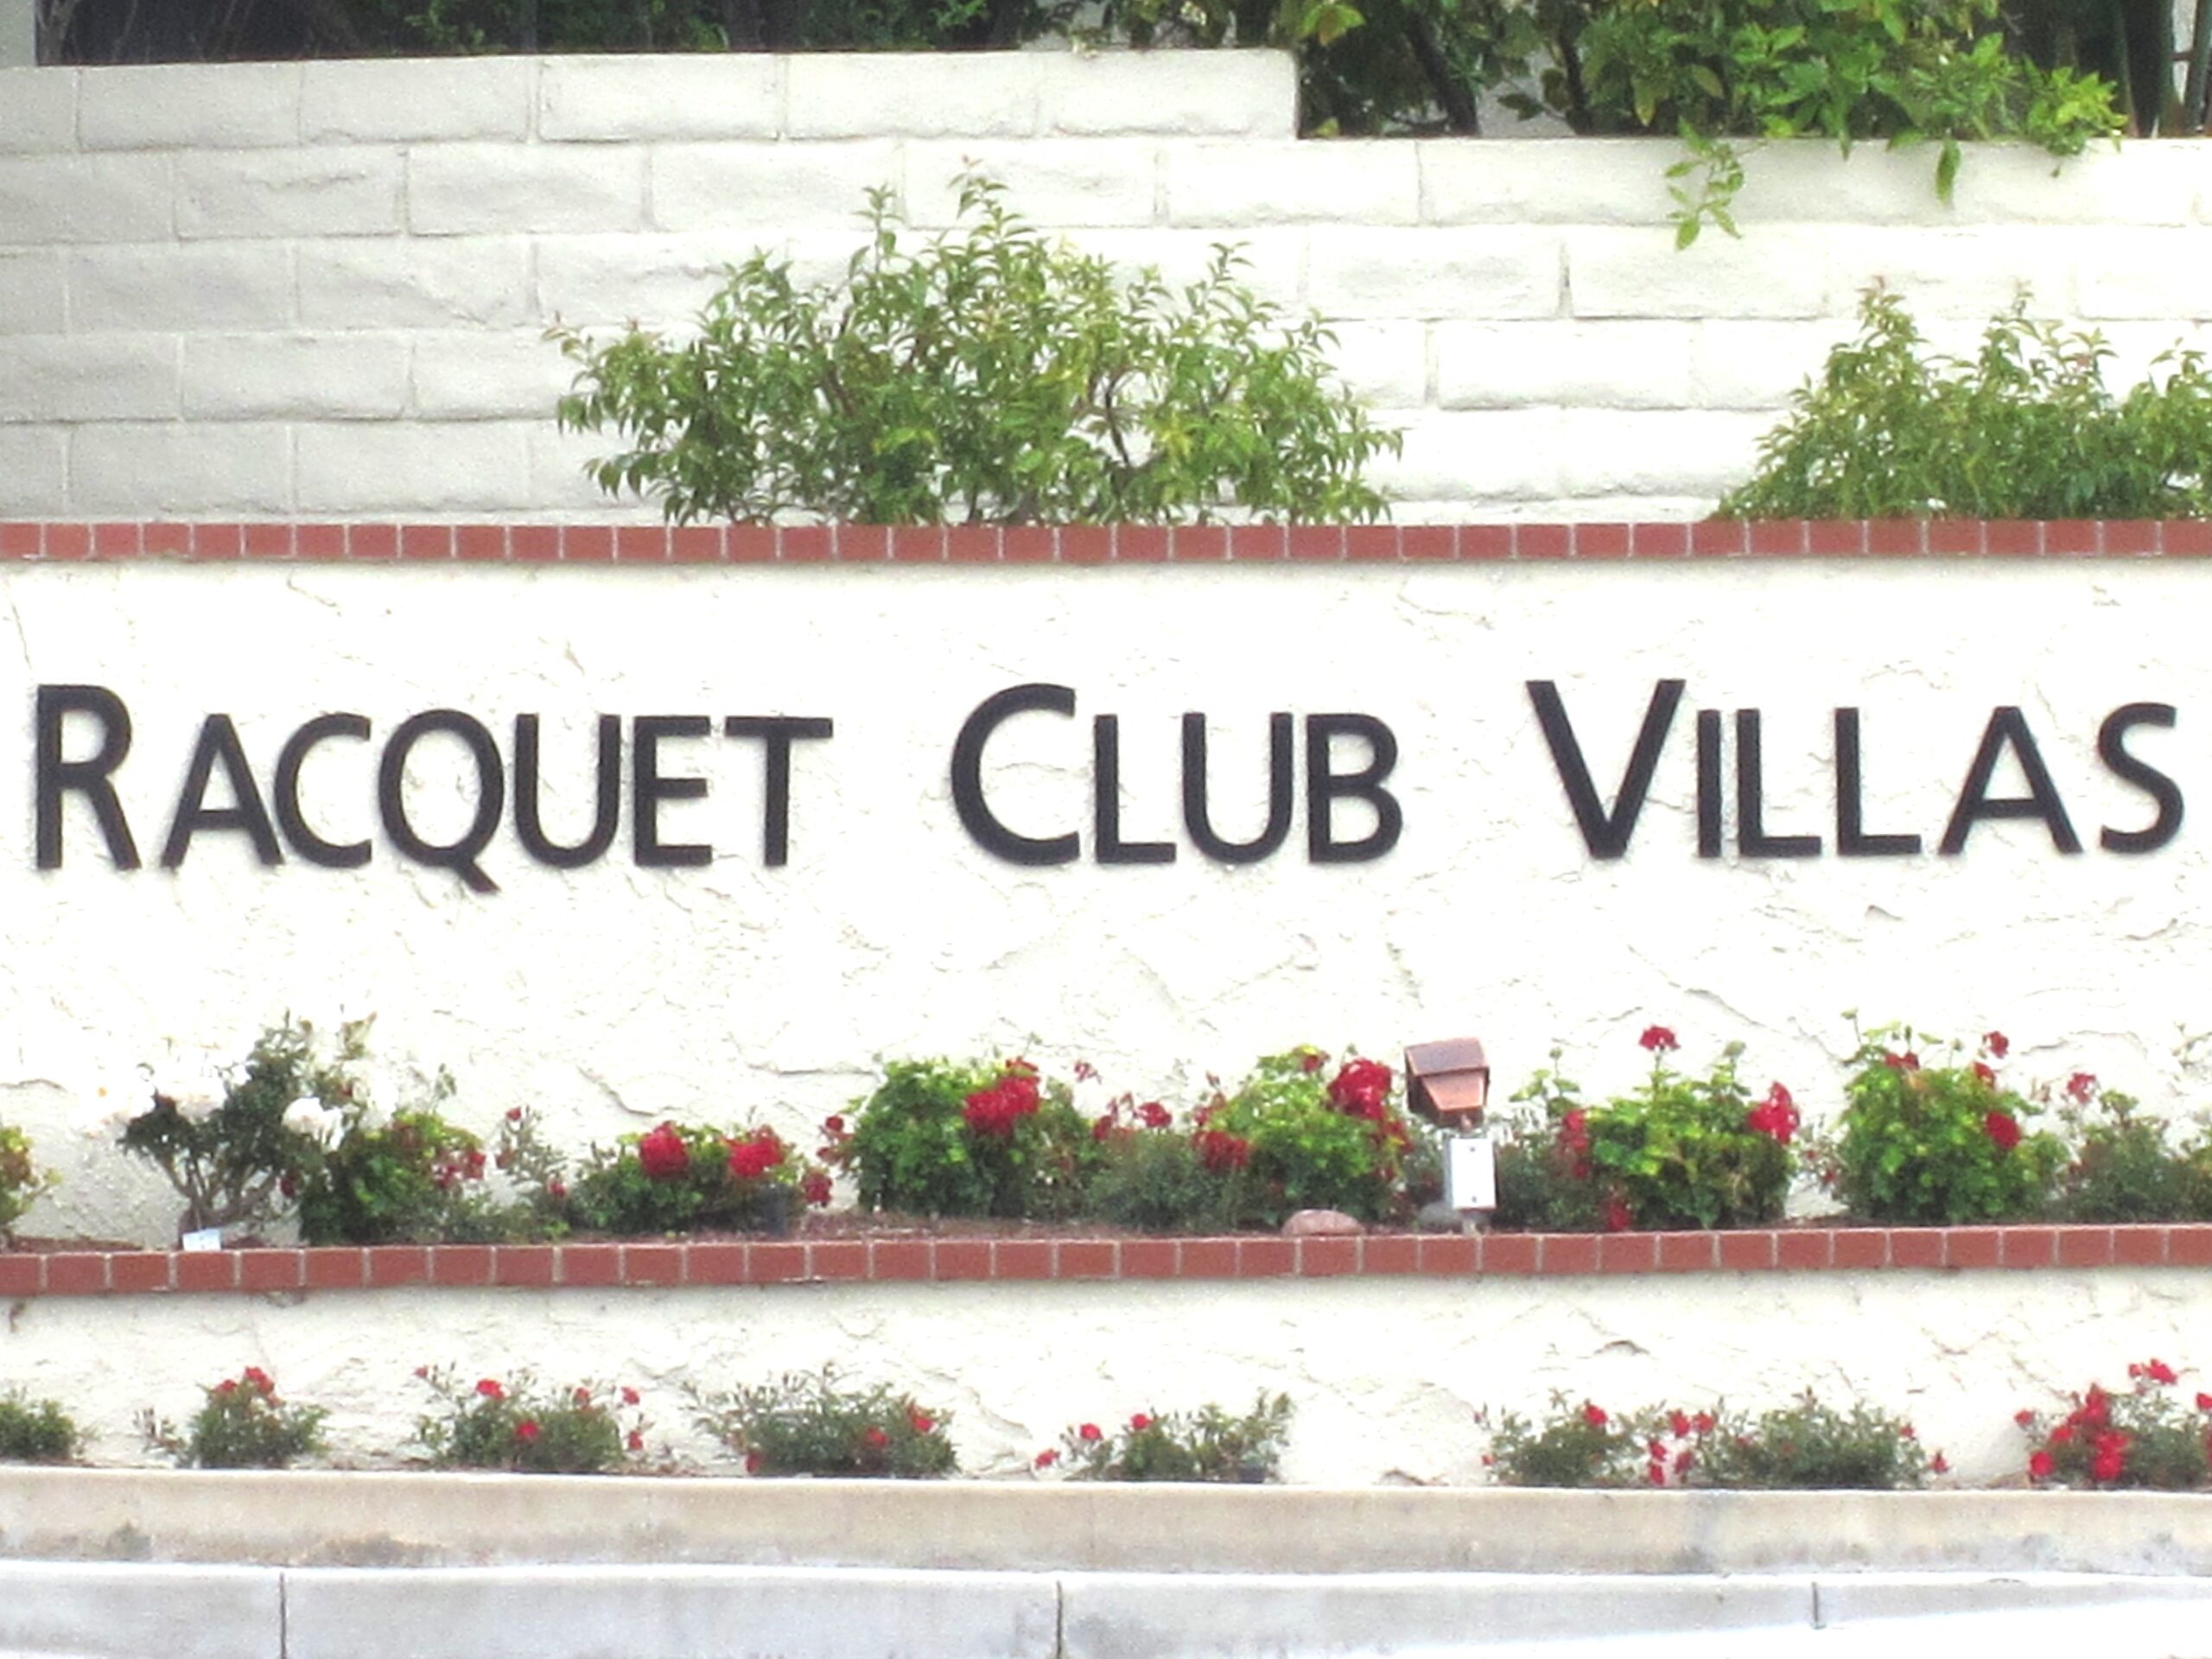 Racquet Club Villas, Thousand Oaks